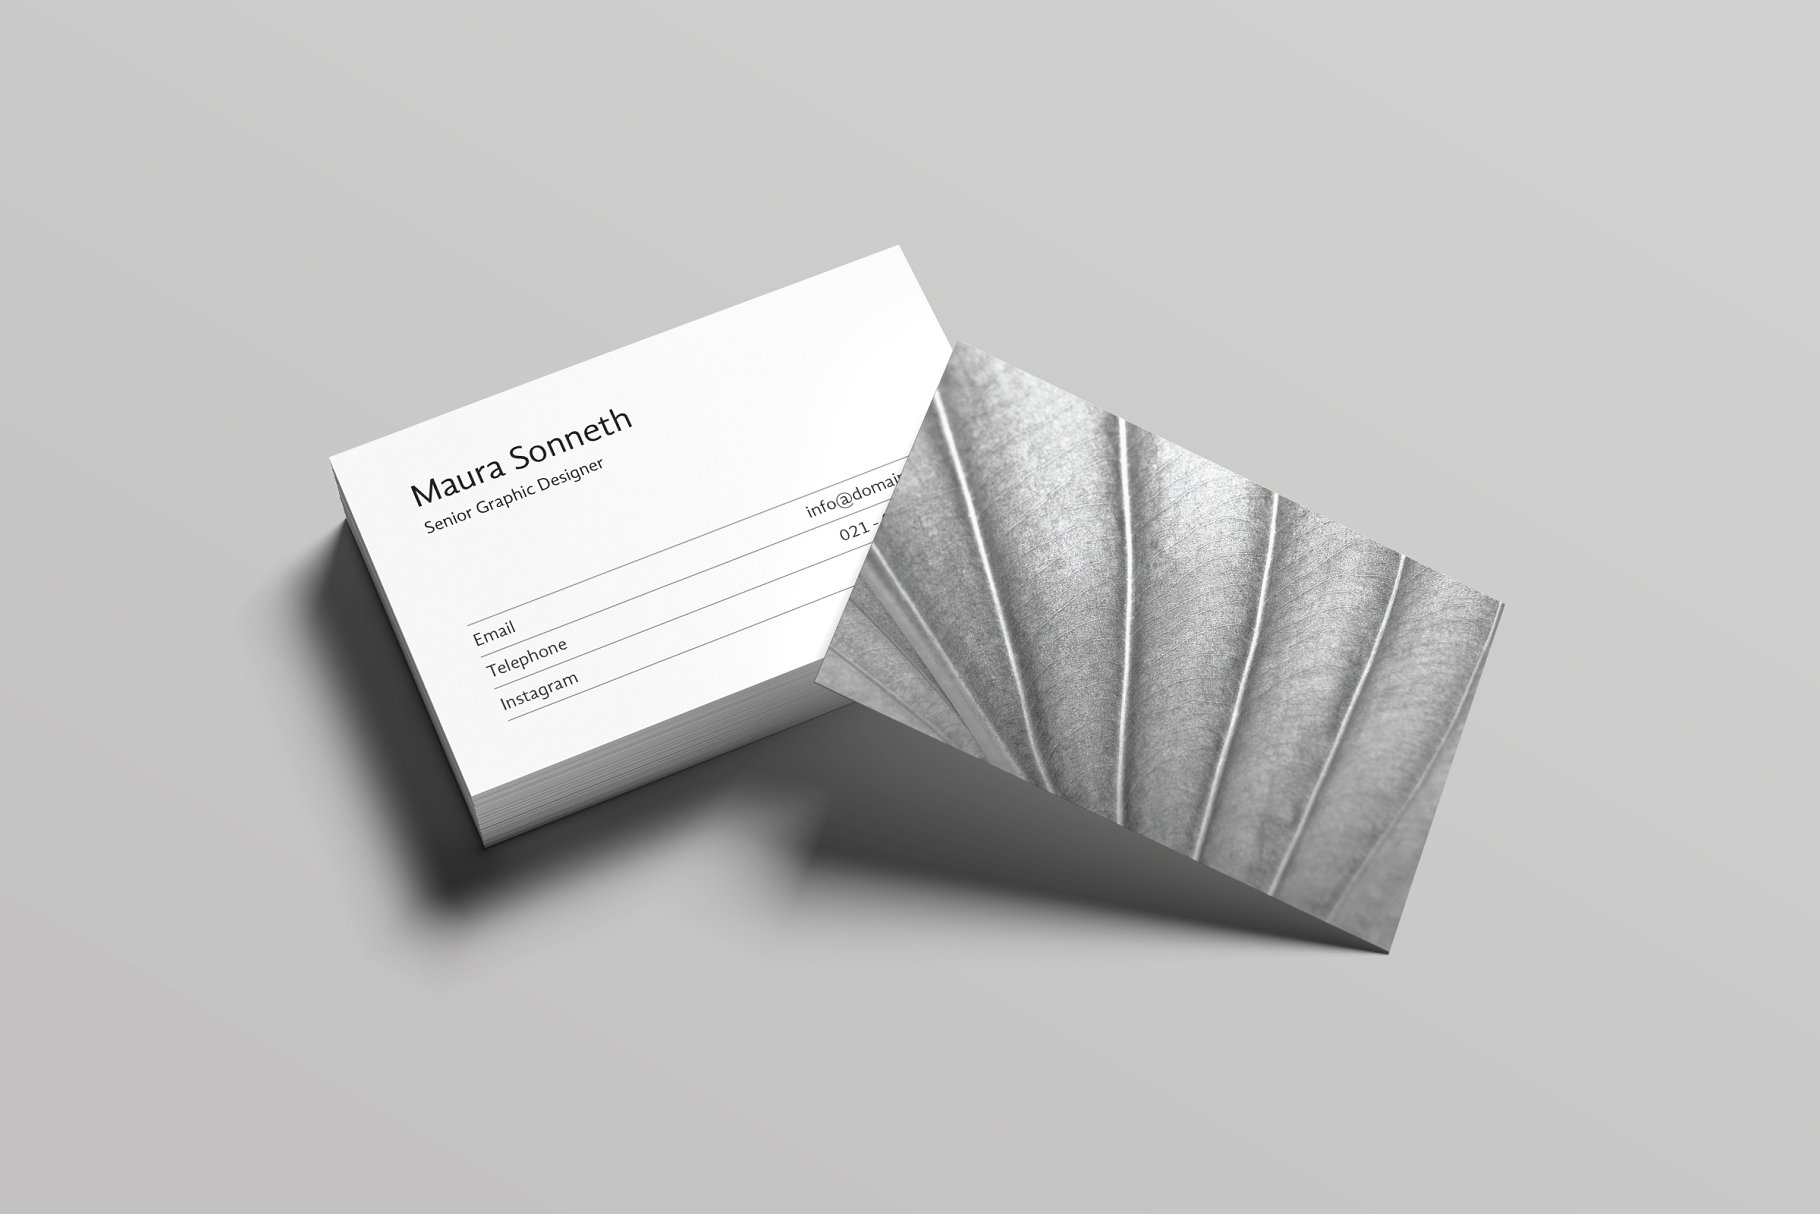 极简主义设计风格企业名片设计模板 Sonneth Business Card Template插图(1)